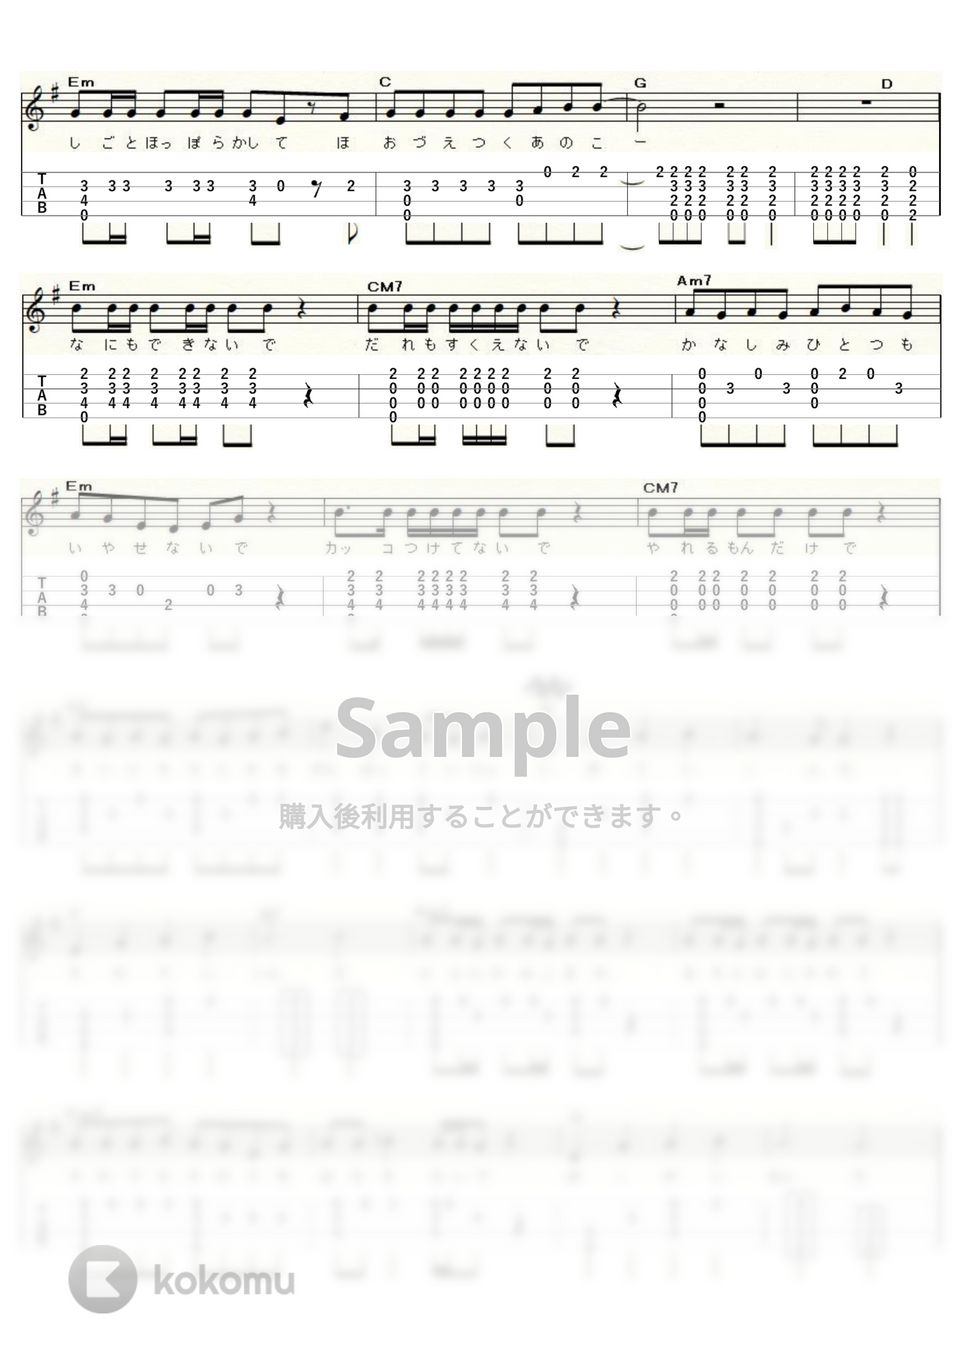 玉置浩二 - 田園 (ｳｸﾚﾚｿﾛ / High-G・Low-G / 中級～上級) by ukulelepapa